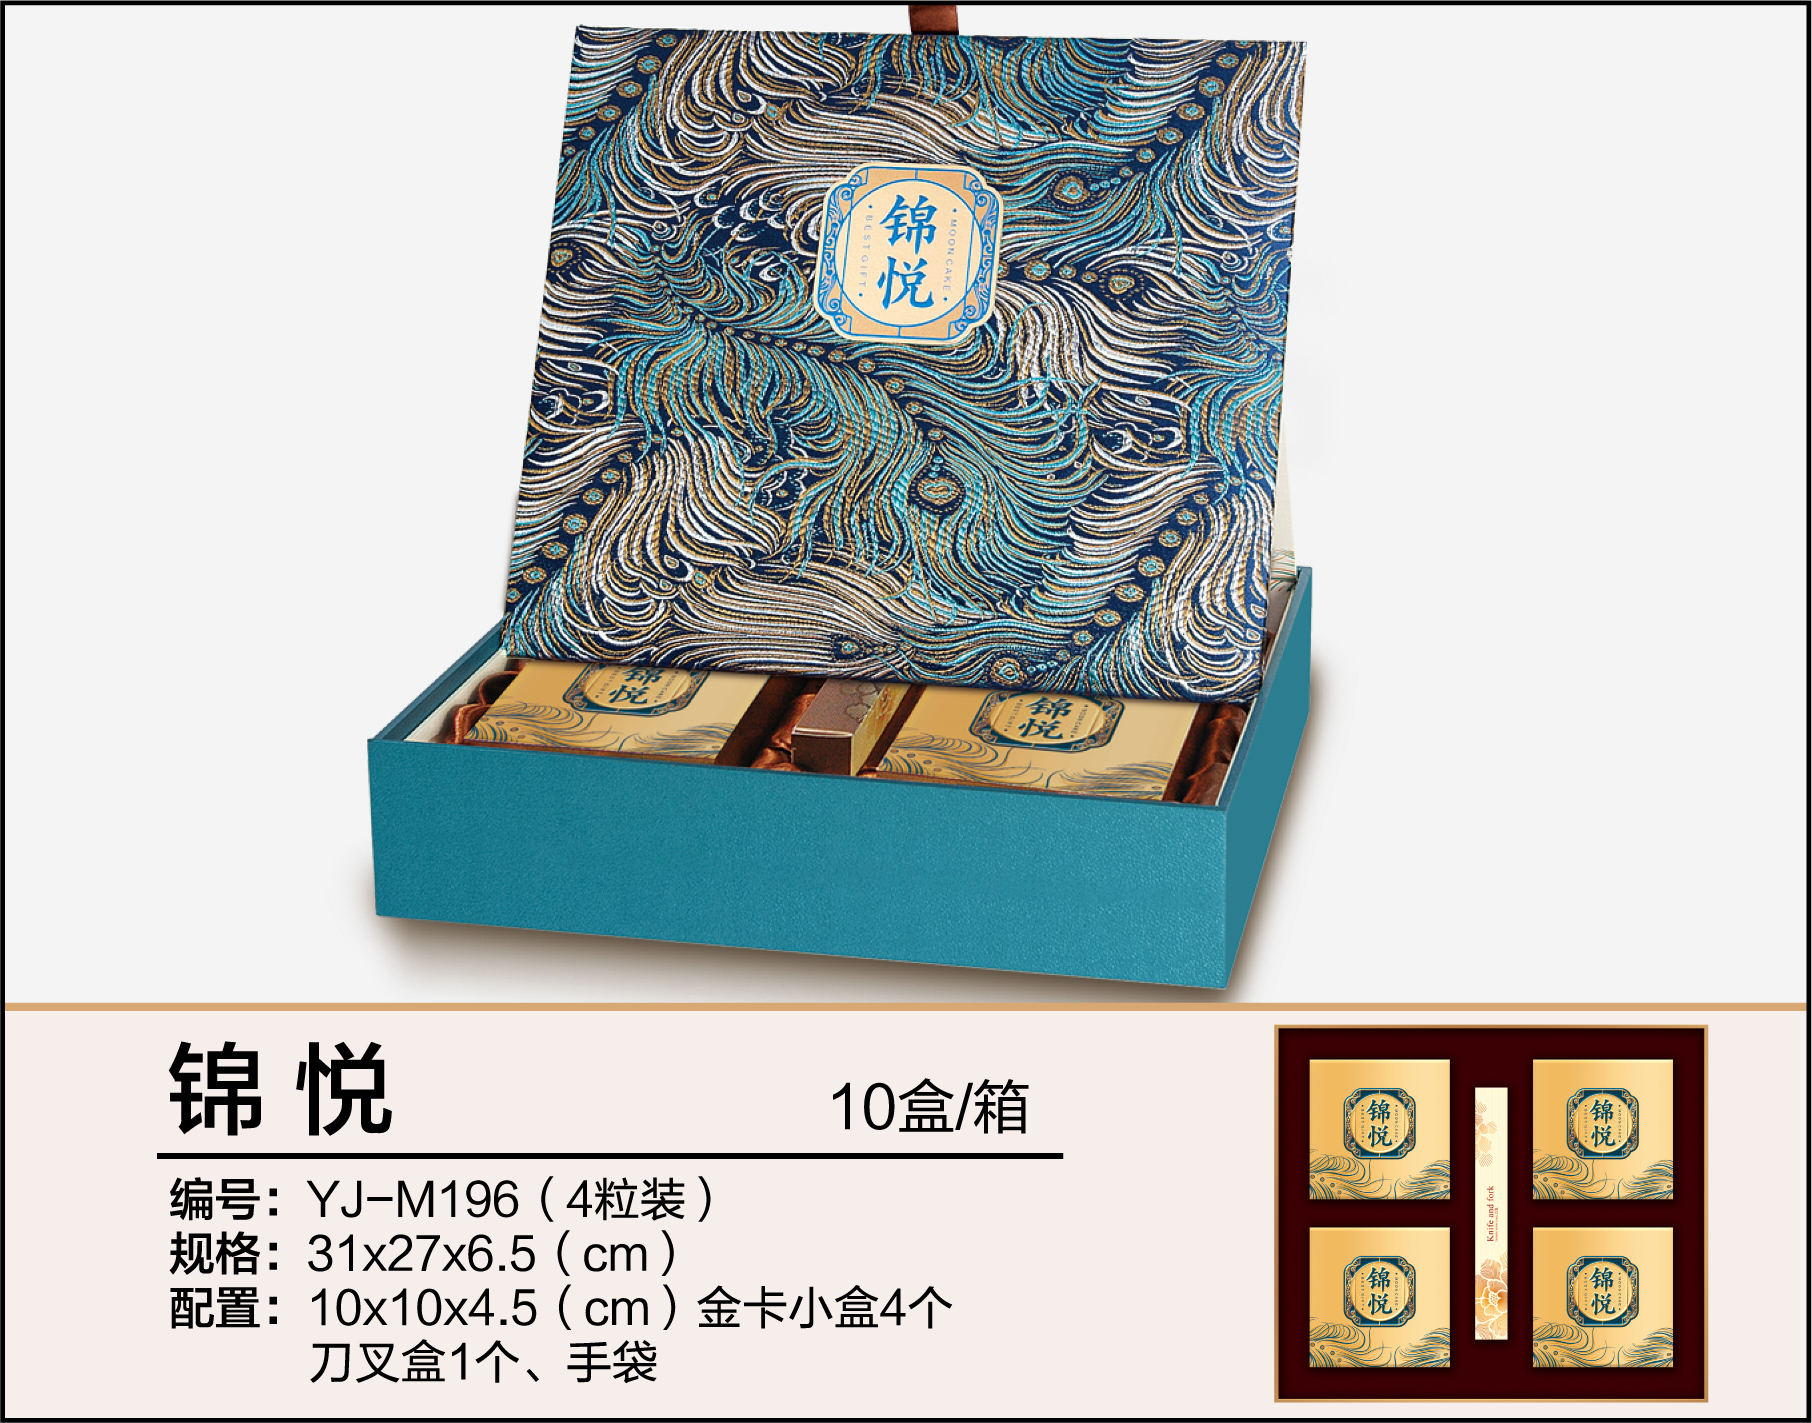 深圳雅佳设计包装有限公司提供包装创意、设计、印刷、印后加工及礼盒生产服务